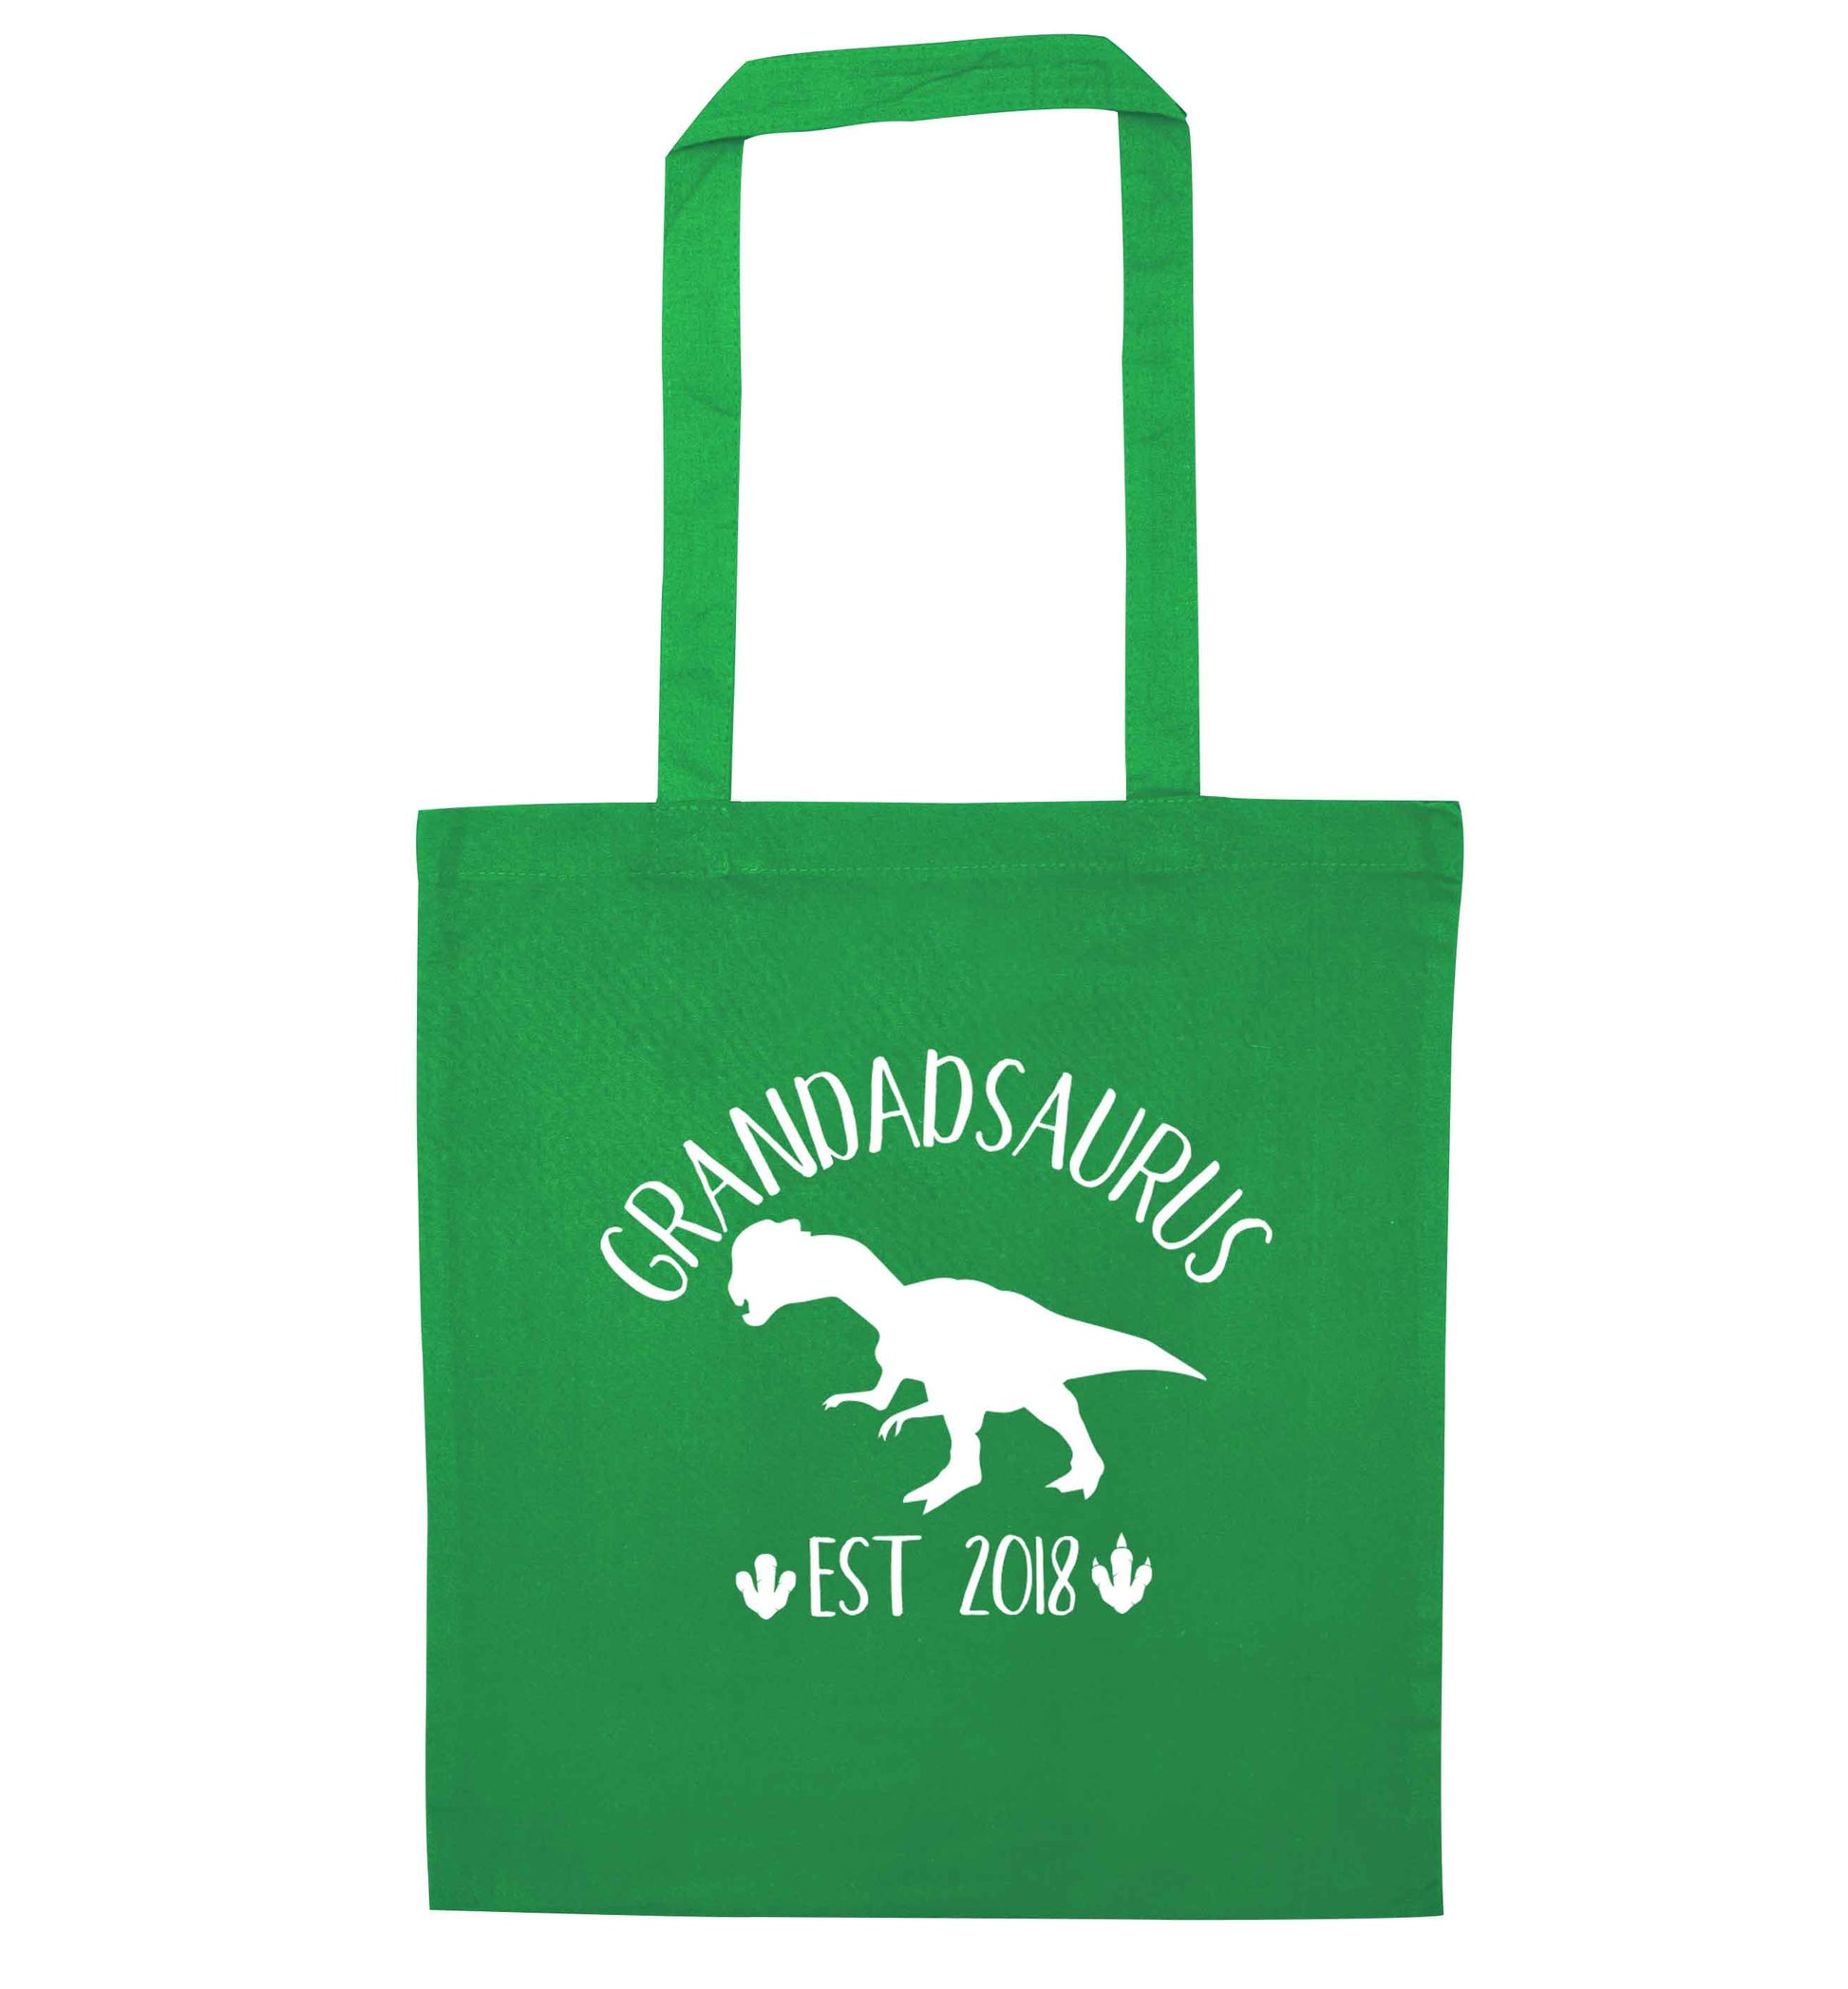 Personalised grandadsaurus since (custom date) green tote bag